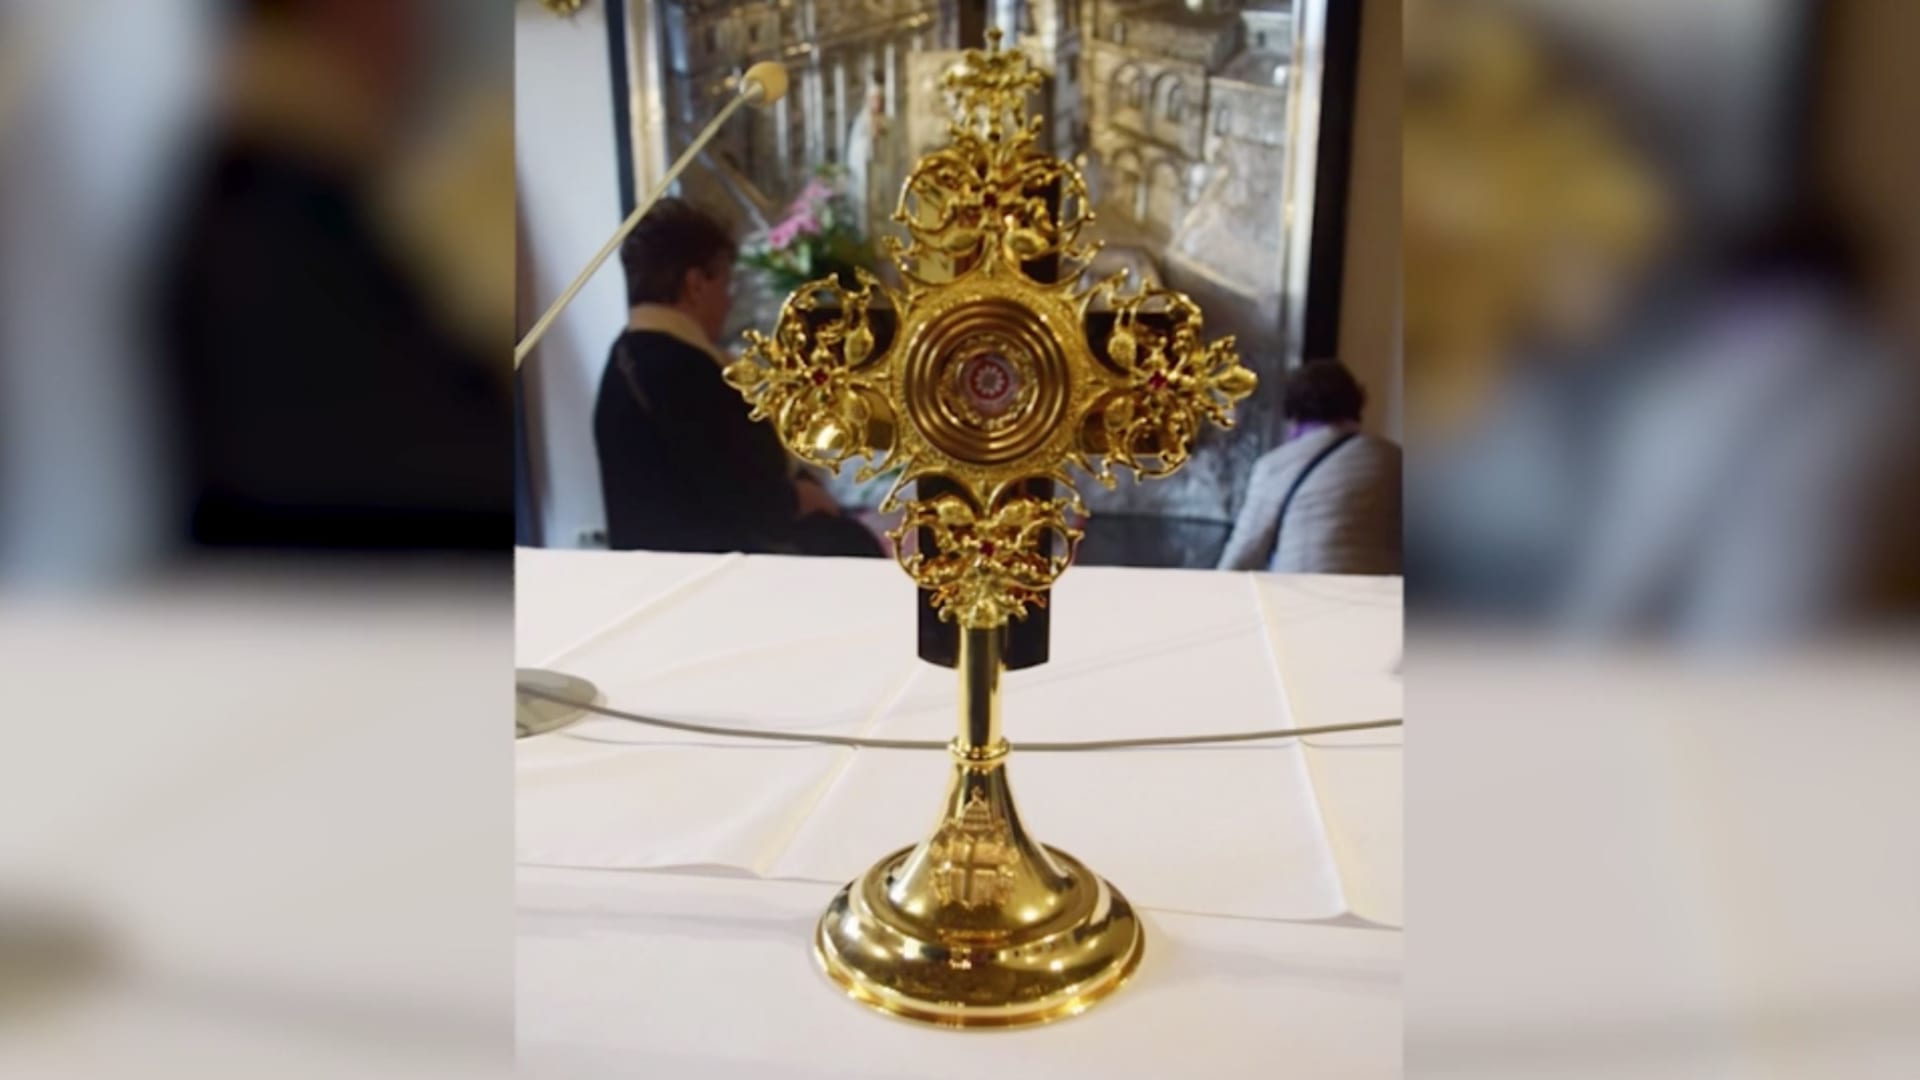 سرقة صليب ذهبي يحتوي على رفات البابا يوحنا بولس الثاني من كنيسة في إيطاليا